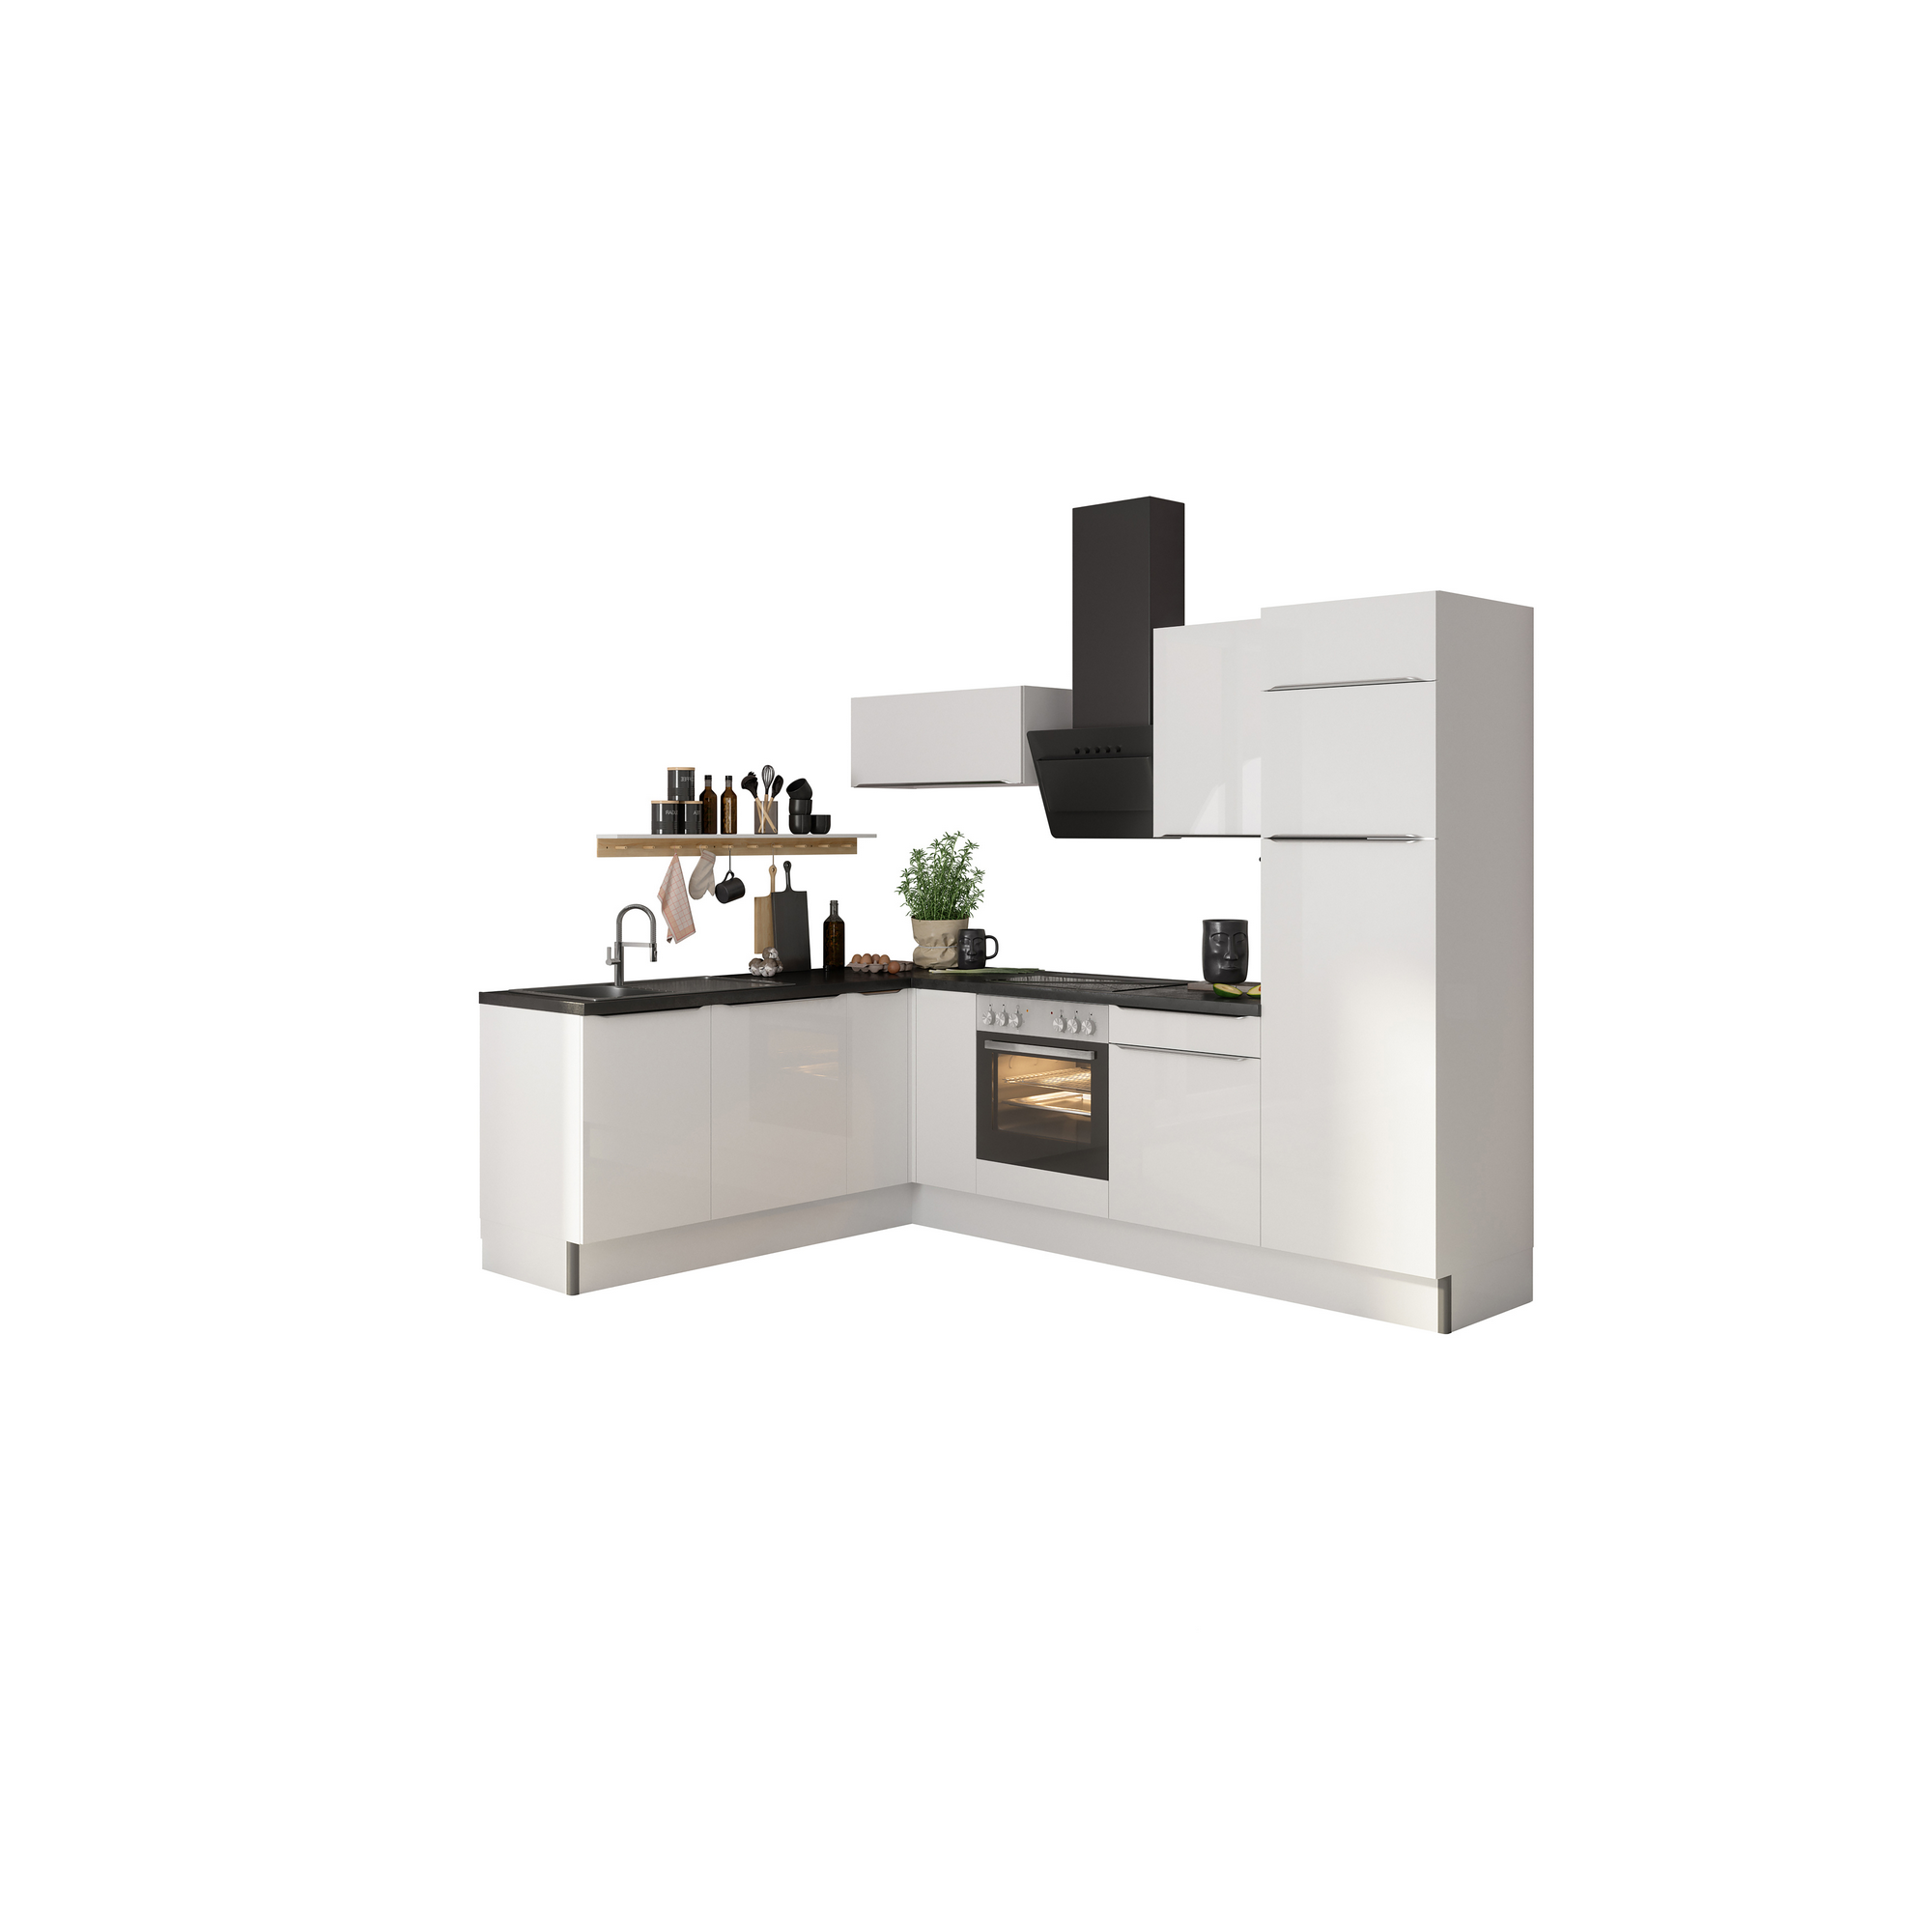 Winkelküche mit E-Geräten 'OPTIkoncept Arvid986' weiß 270 cm + product picture